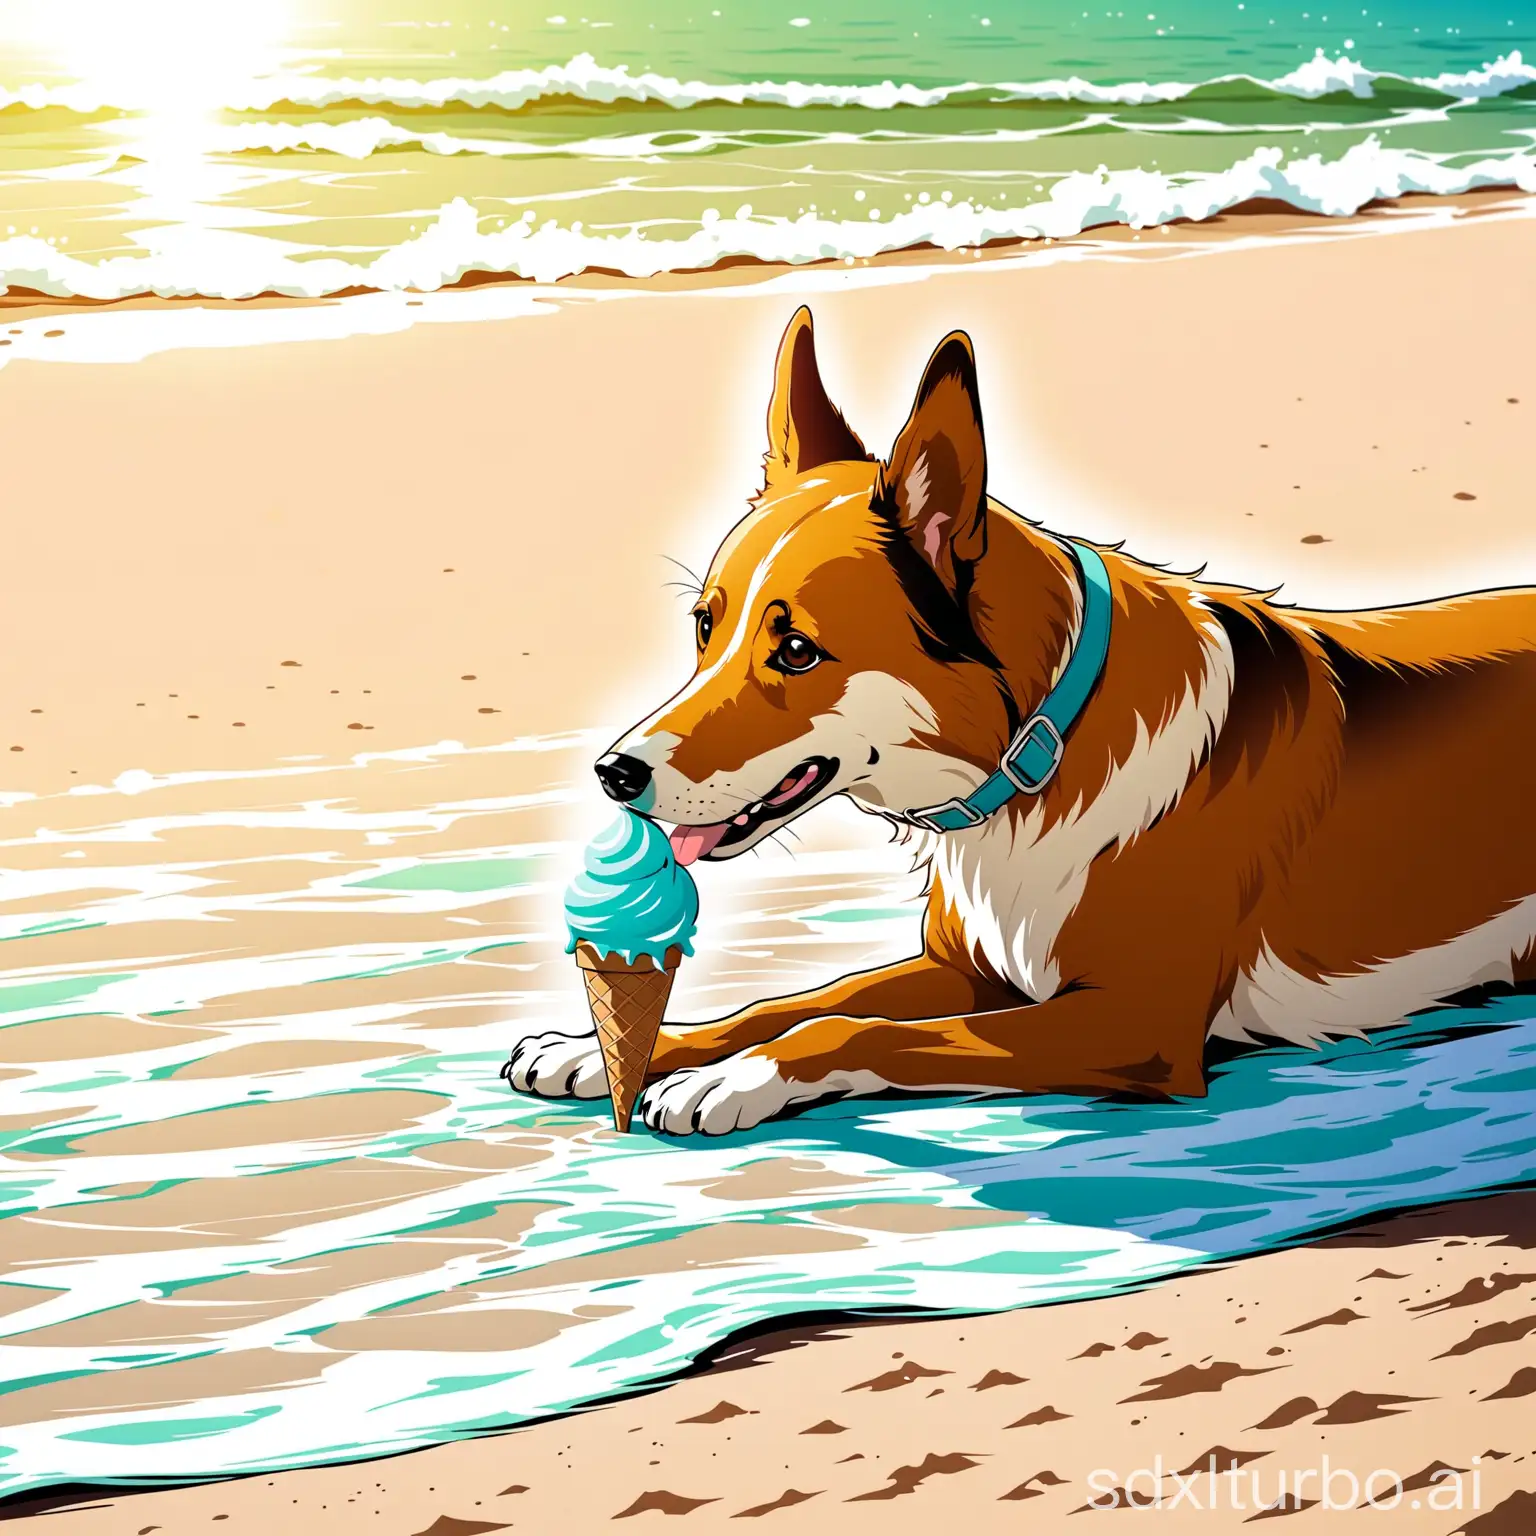 A dog eating ice cream on the beach